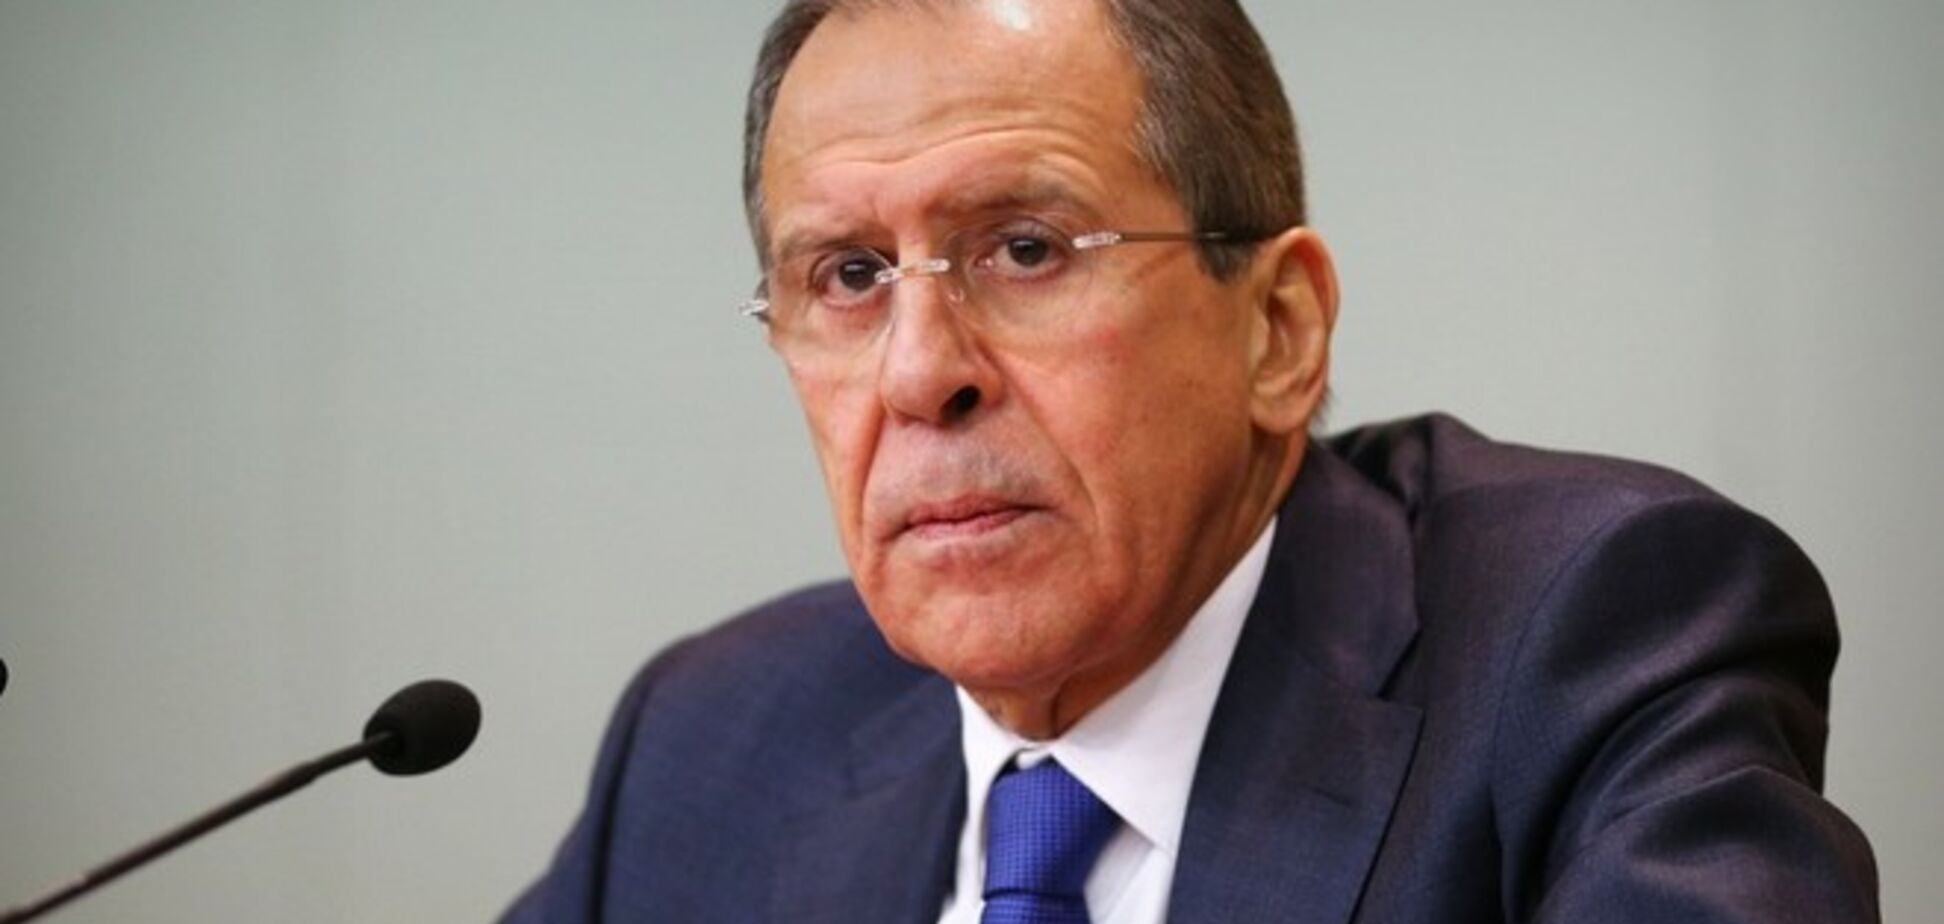 Лавров считает урегулирование кризиса в Украине в 2015 году 'не просто возможным'